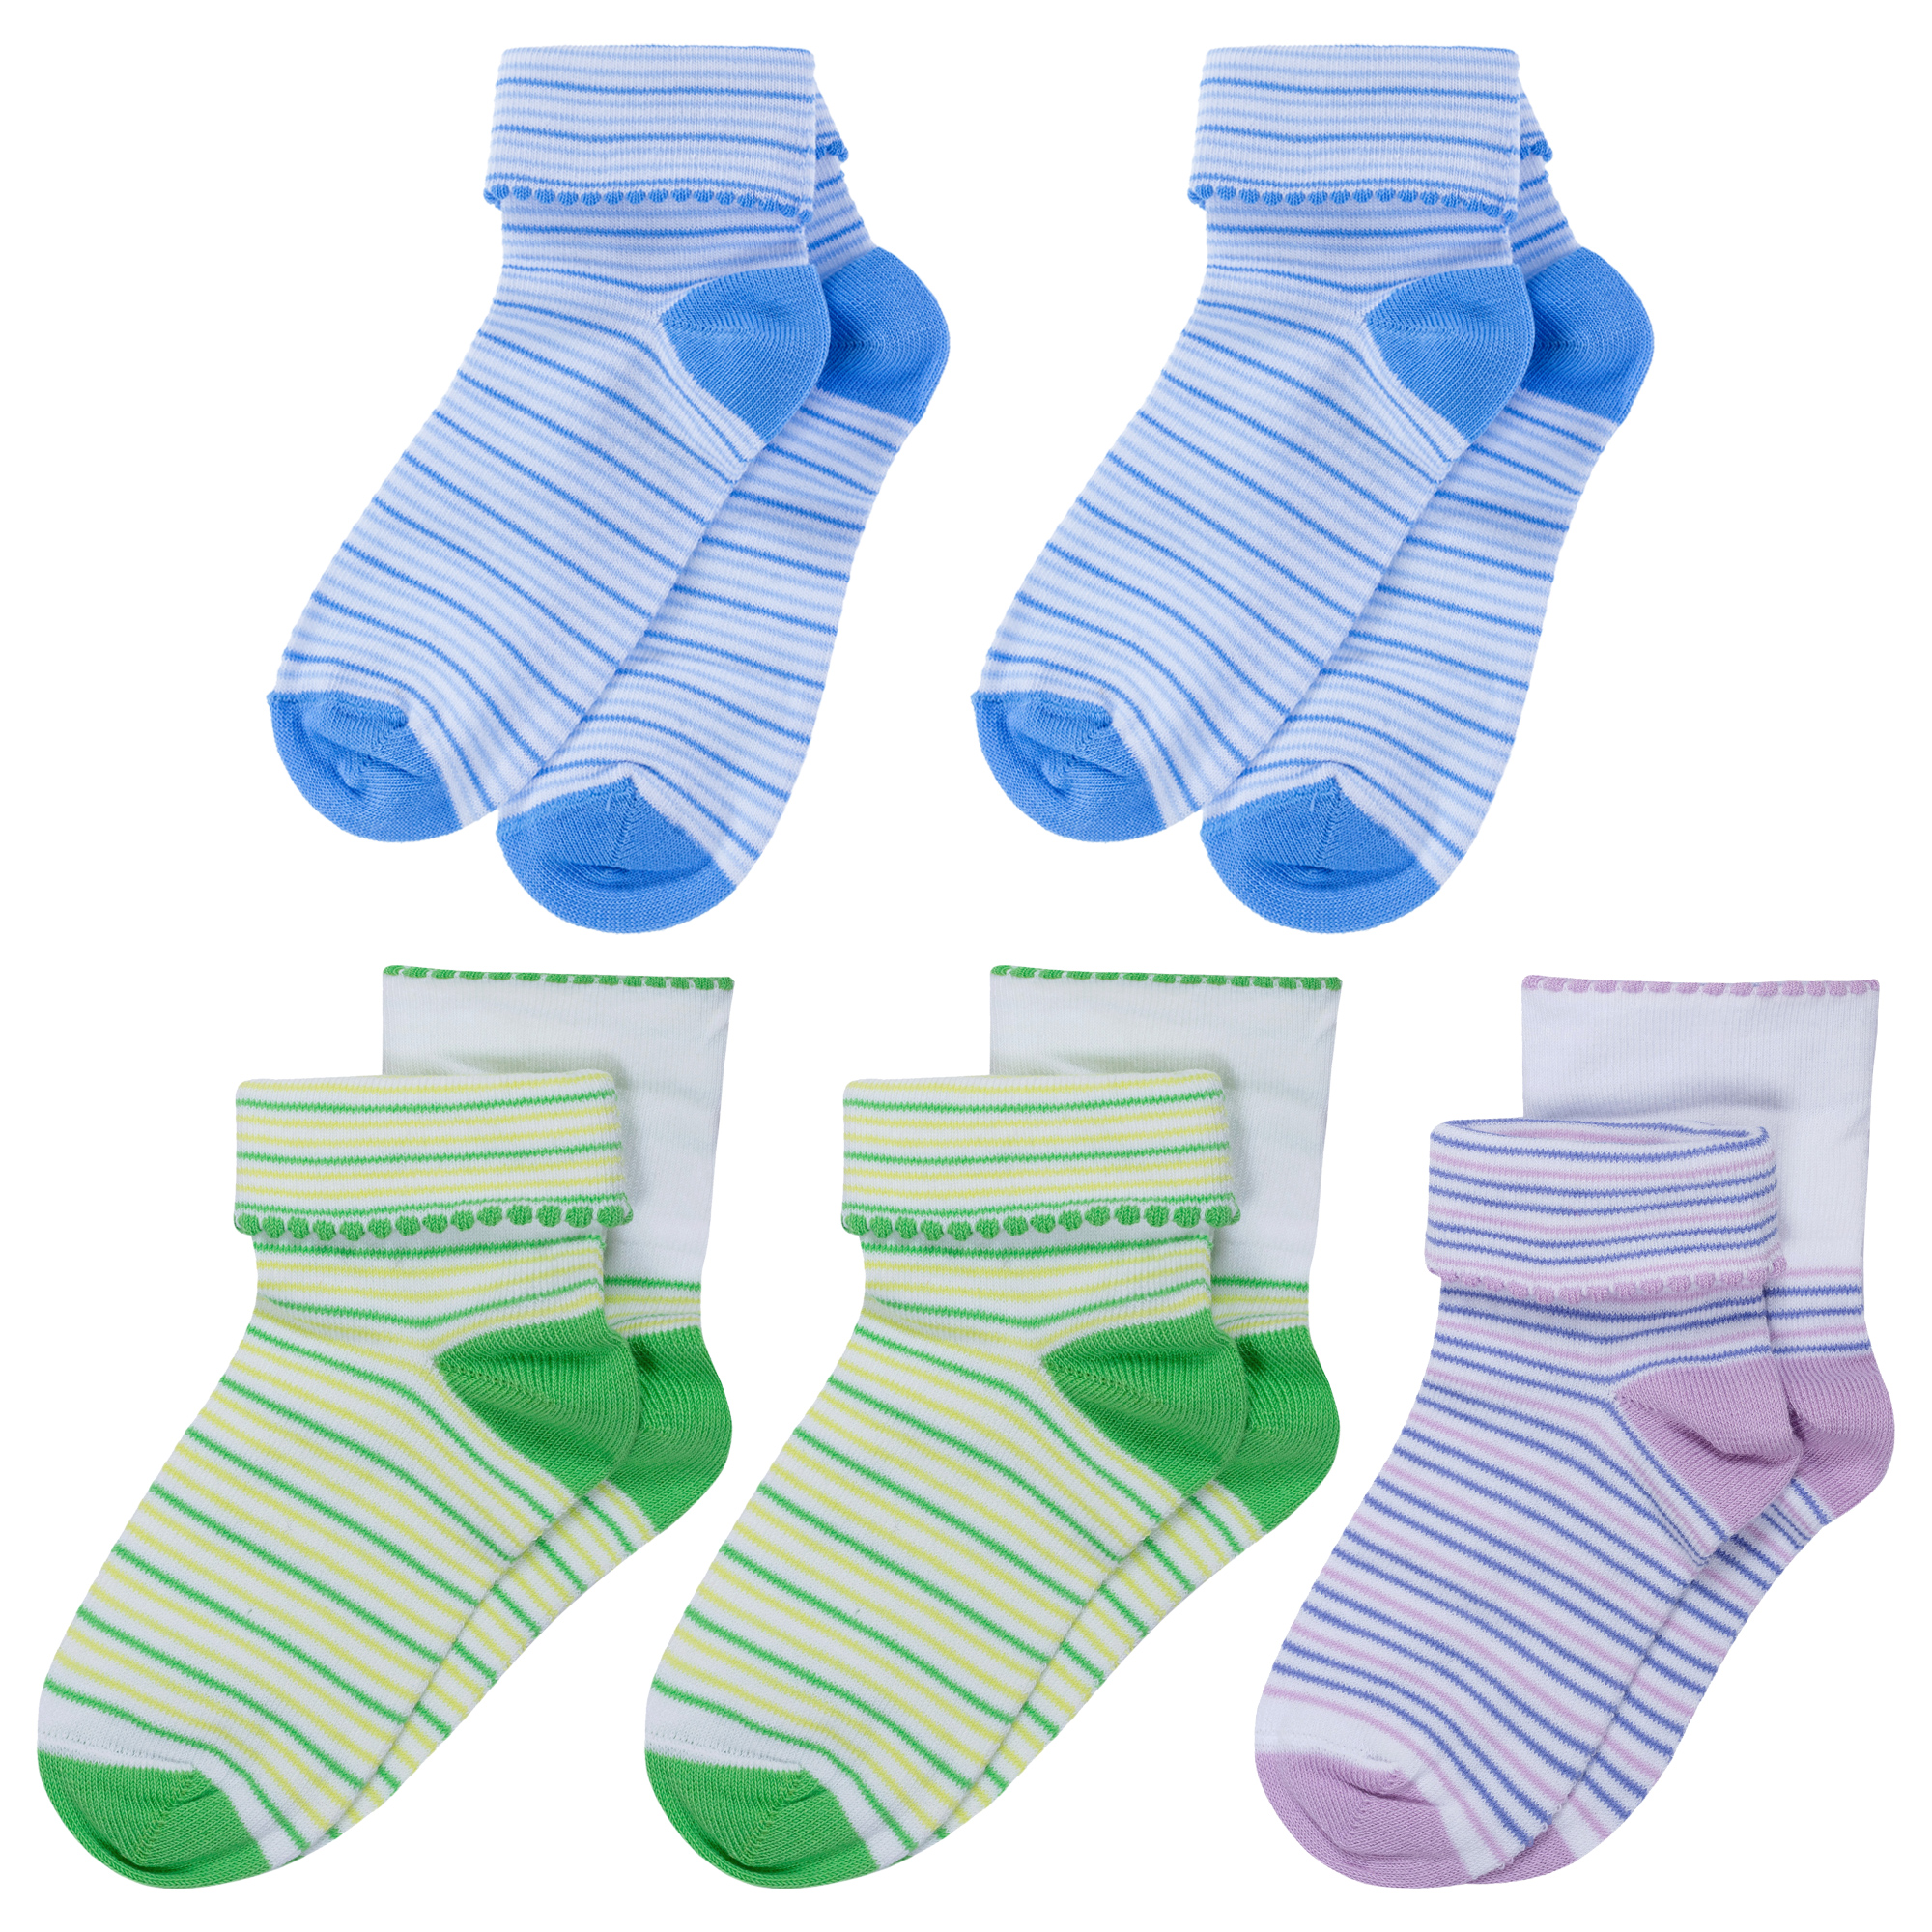 Носки для девочек LorenzLine 5-Л4 цв. зеленый; голубой; фиолетовый р. 20-22